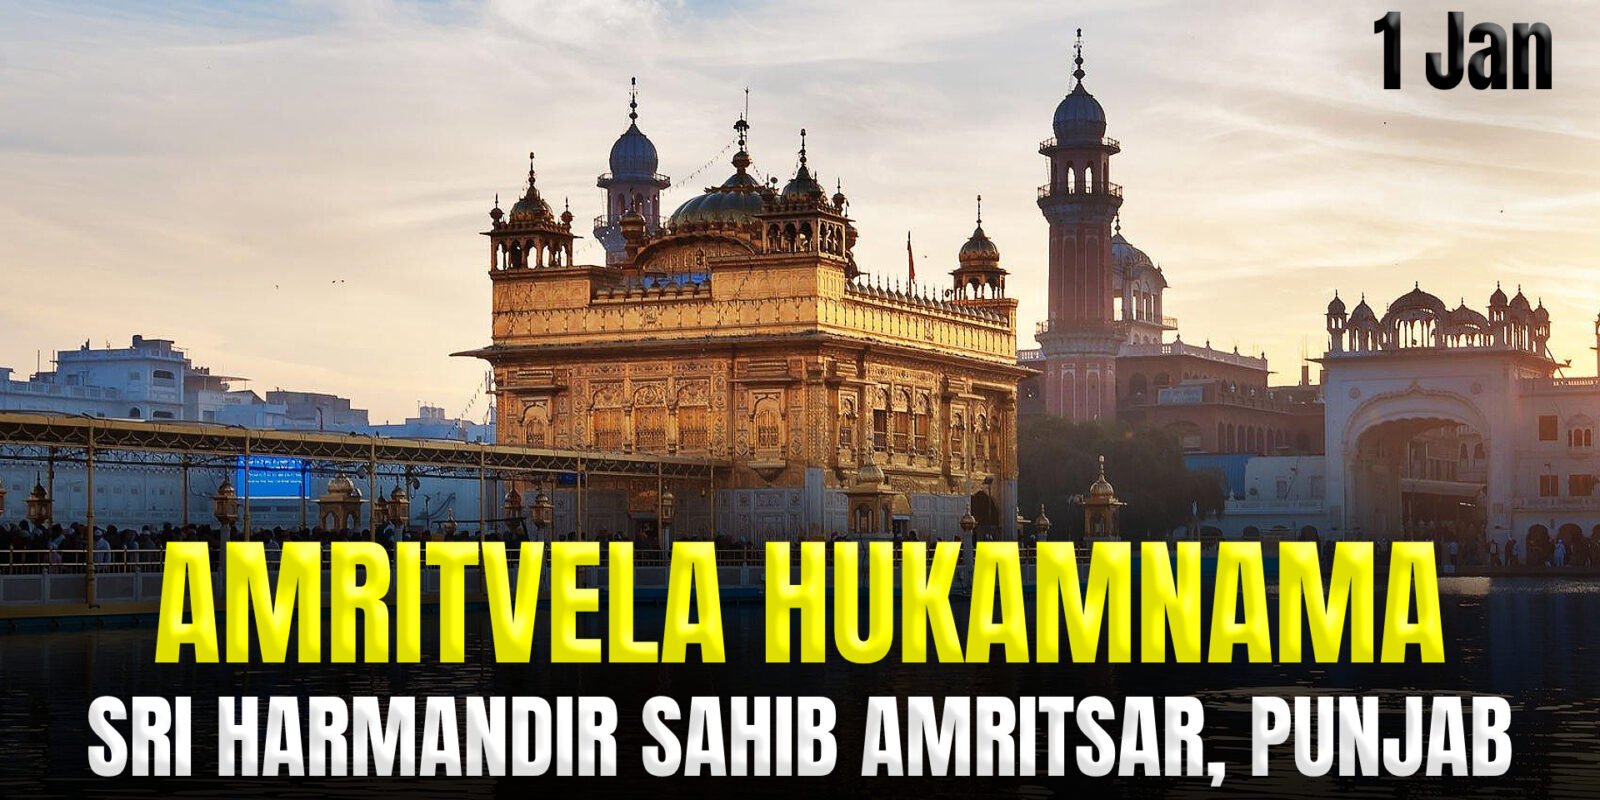 Today's Amritvela Hukamnama Darbar Sahib - 1 January 2024